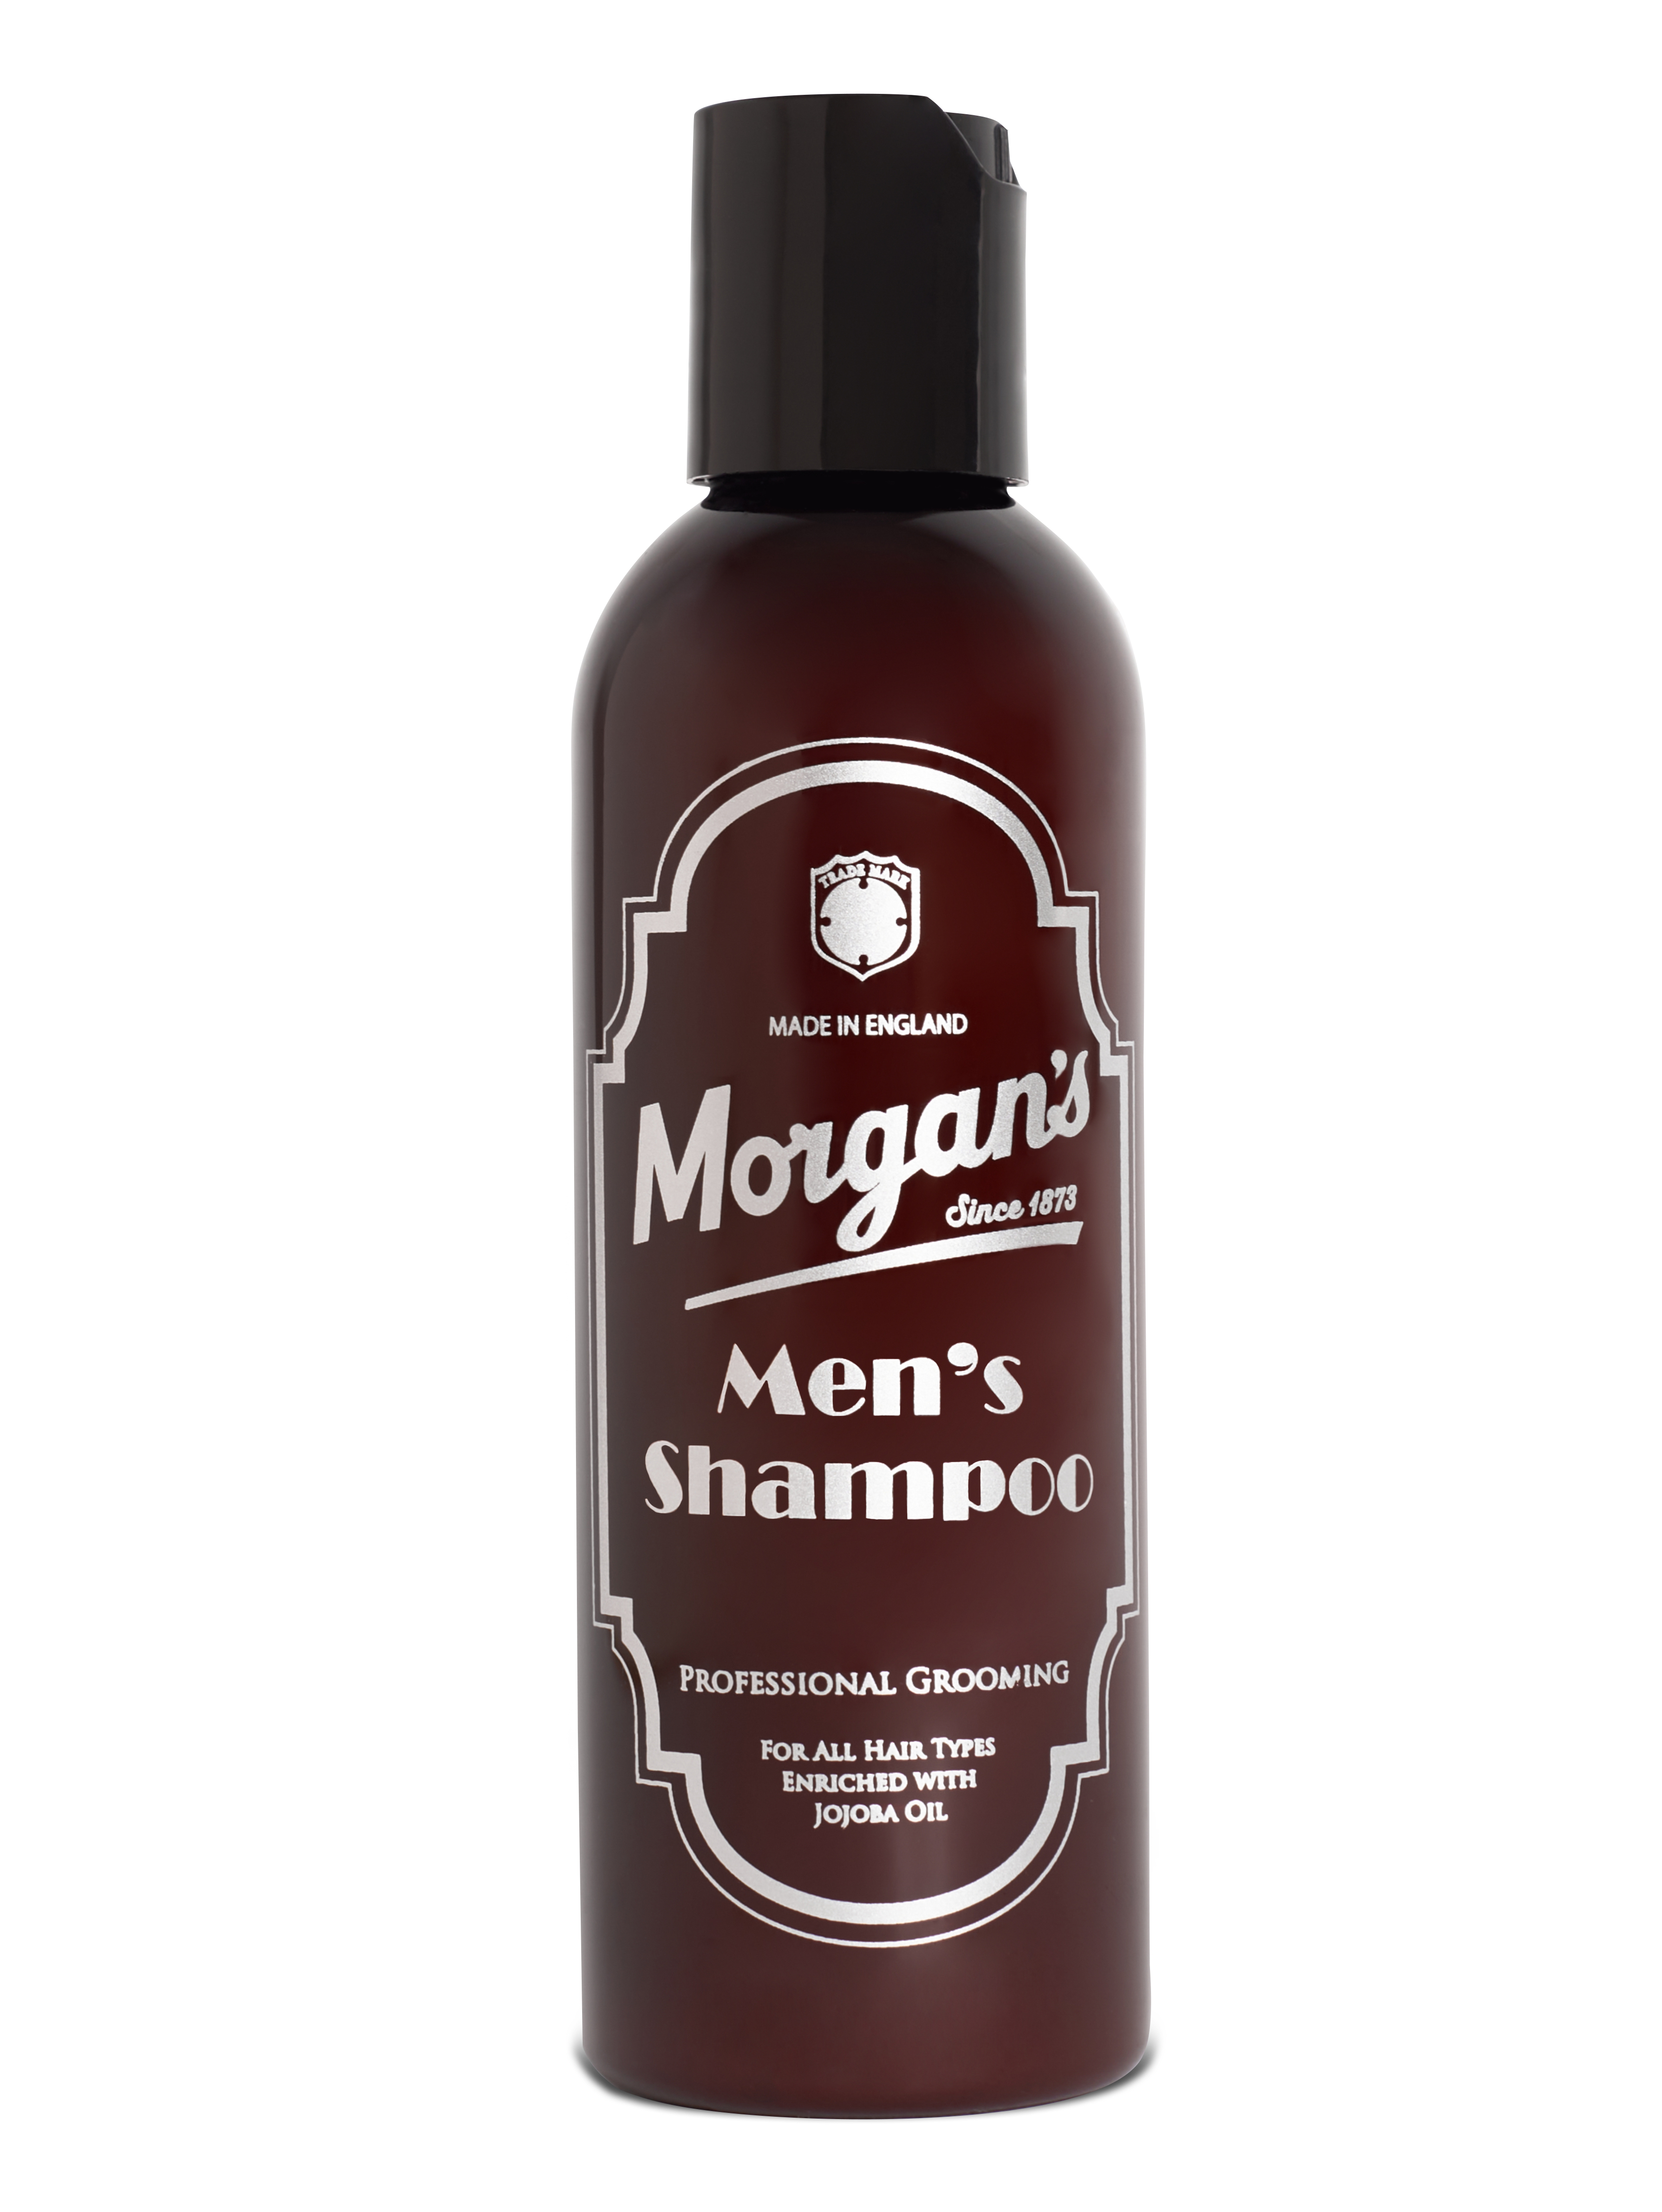 Мужской шампунь Morgan’s для ежедневного использования 100 мл мужской фактор почему снижается качество спермы и как остановить этот процесс